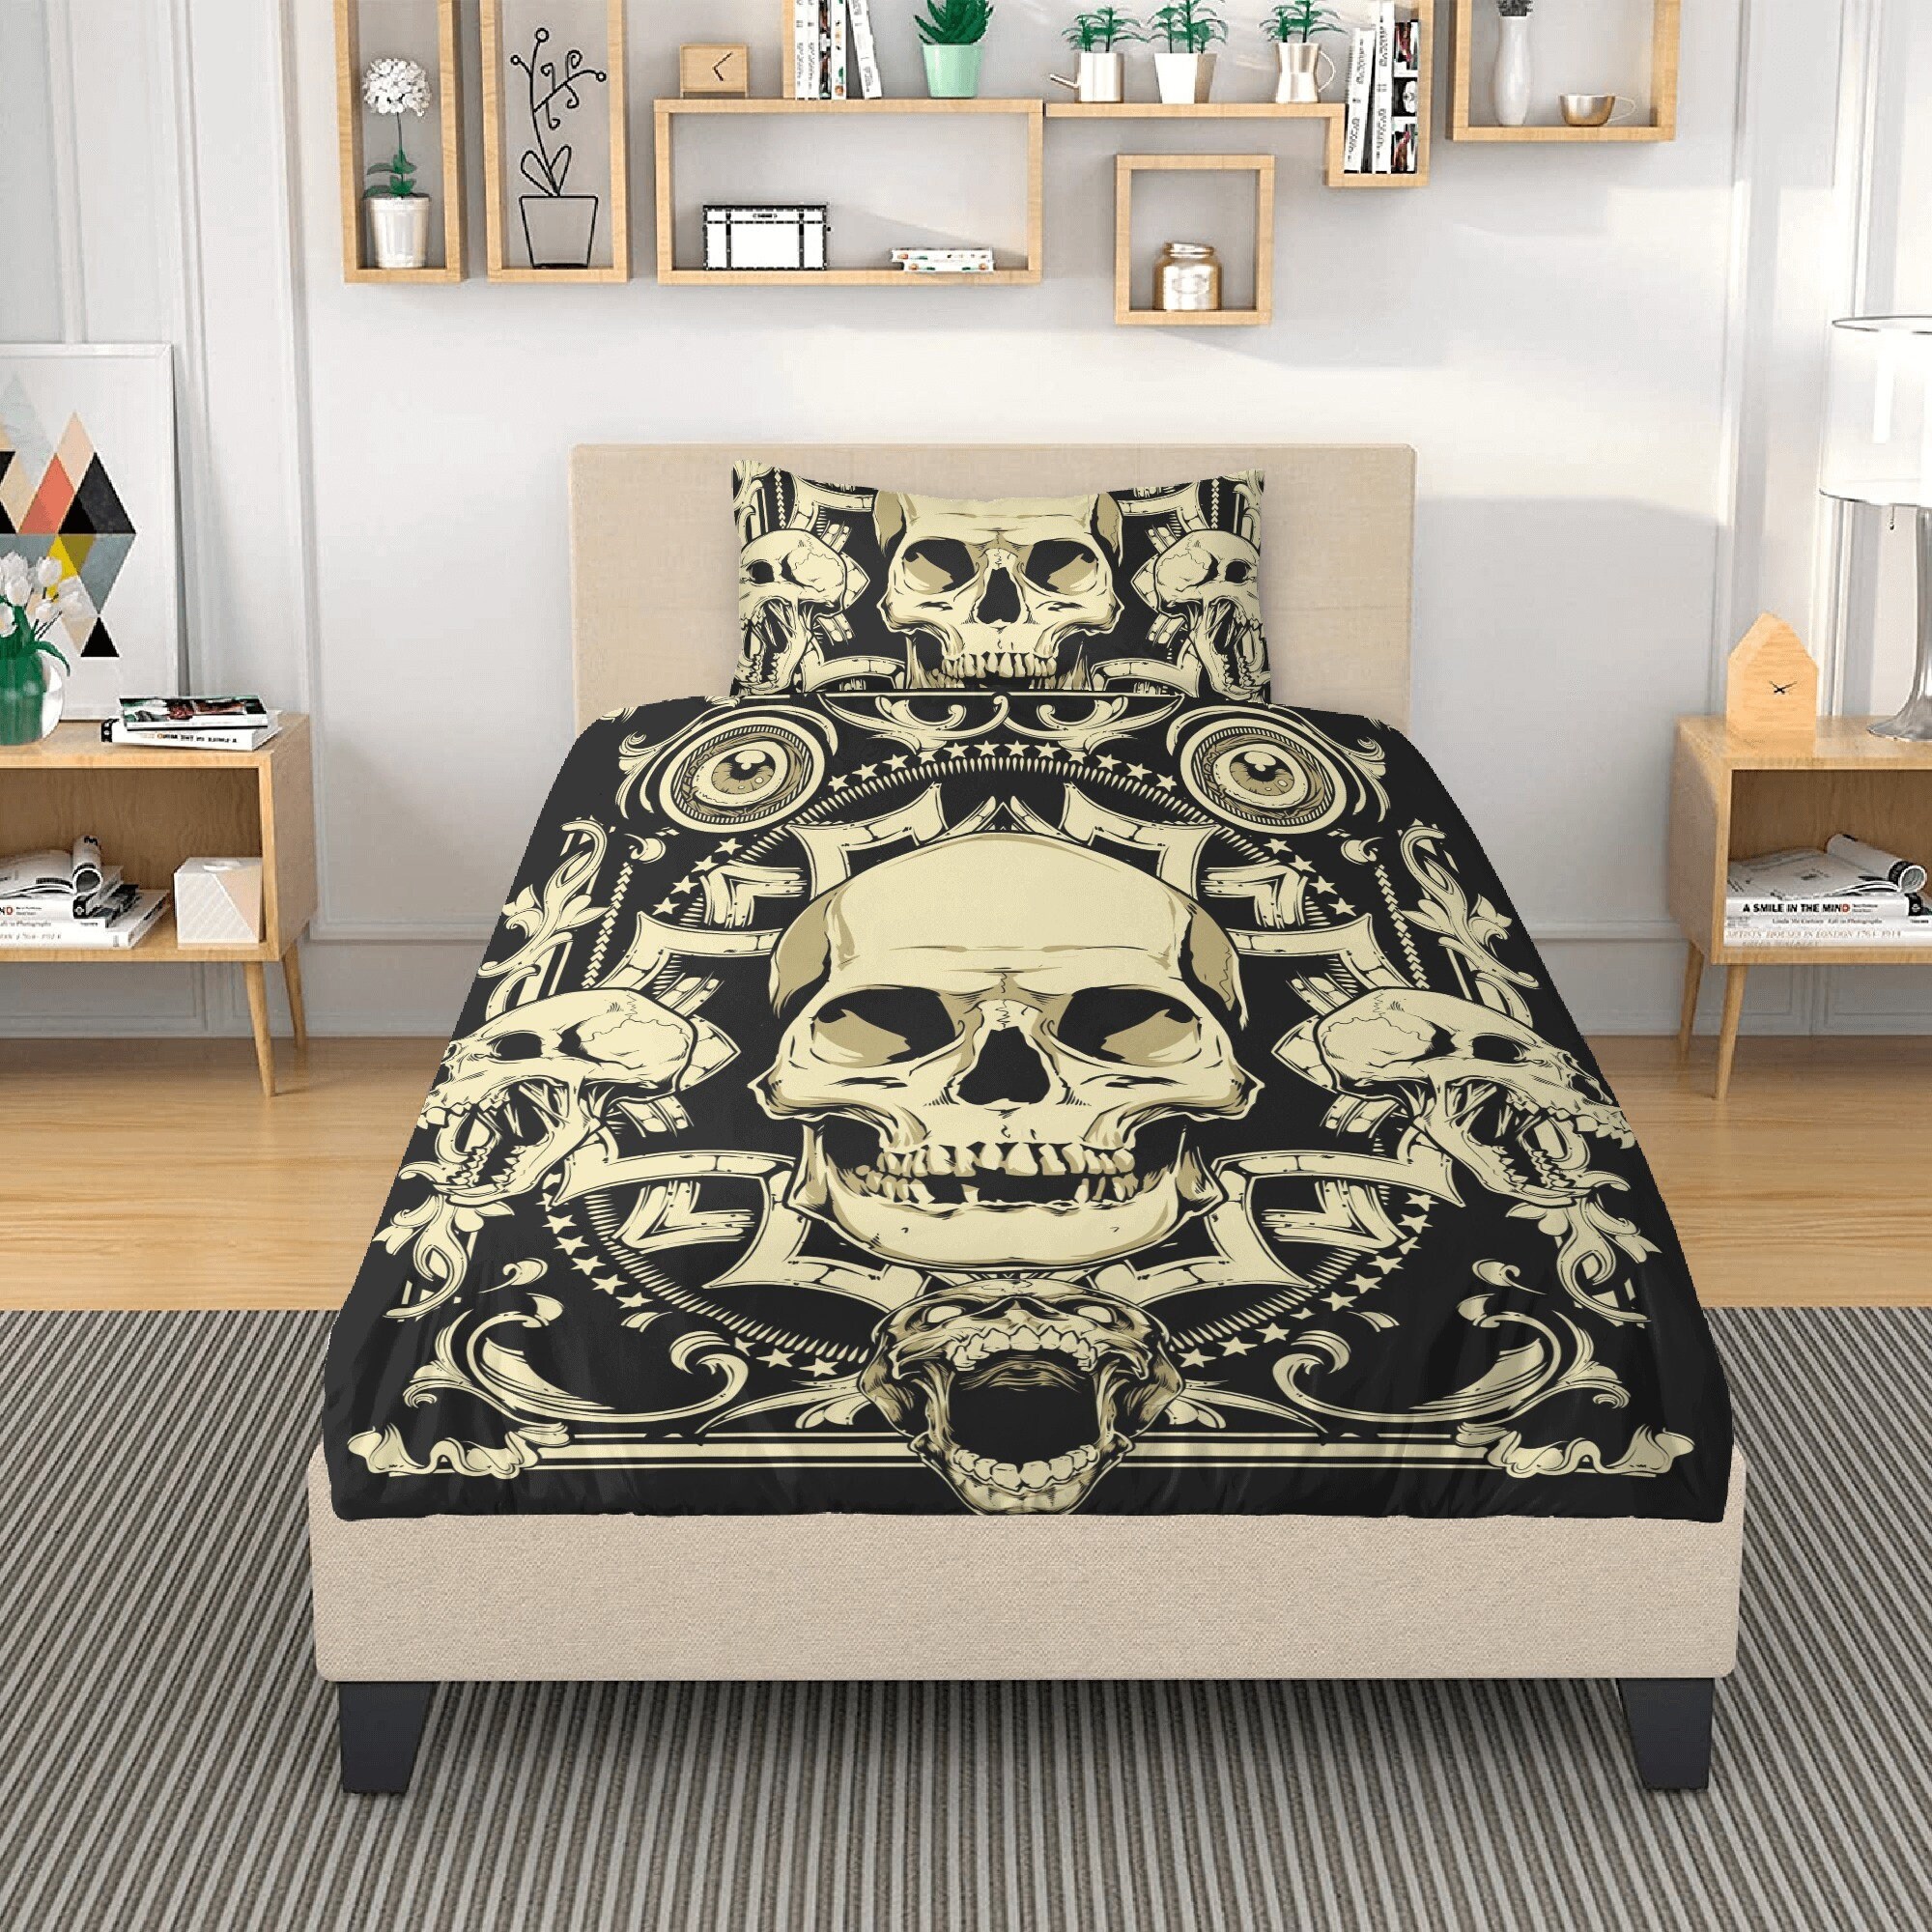 Skull Bedding Set, Monster Bedding Set